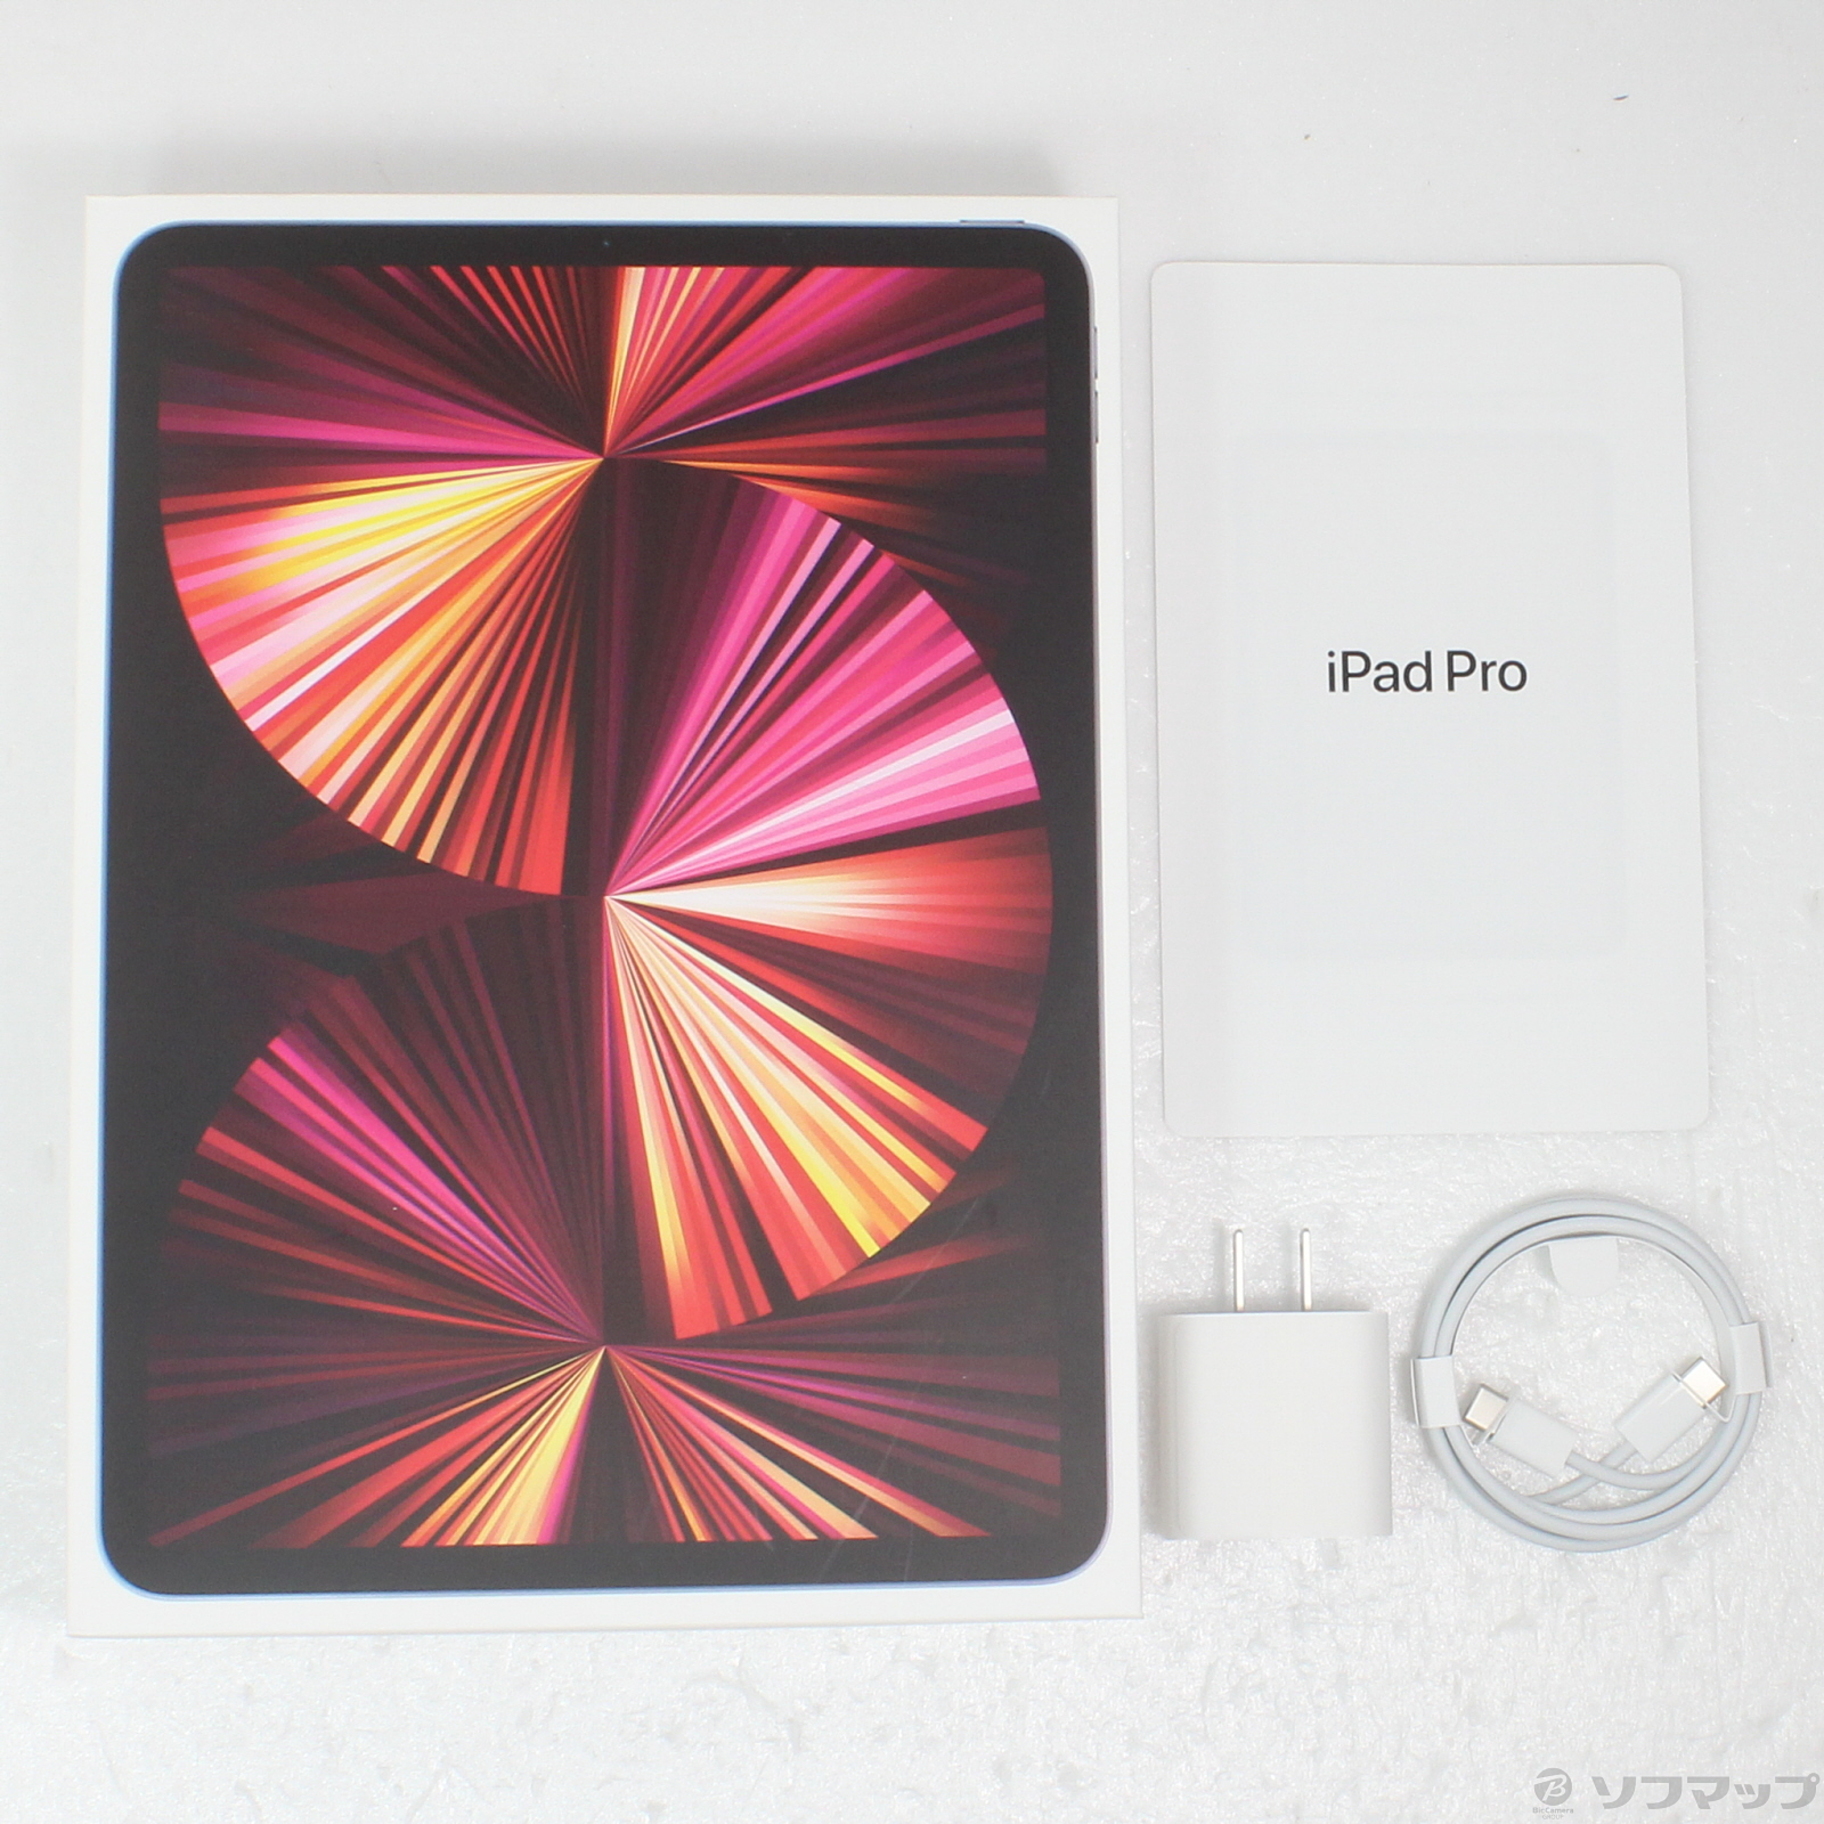 買物MHQR3J/A iPad Pro Wi-Fi 128GB スペースグレイ iPad本体